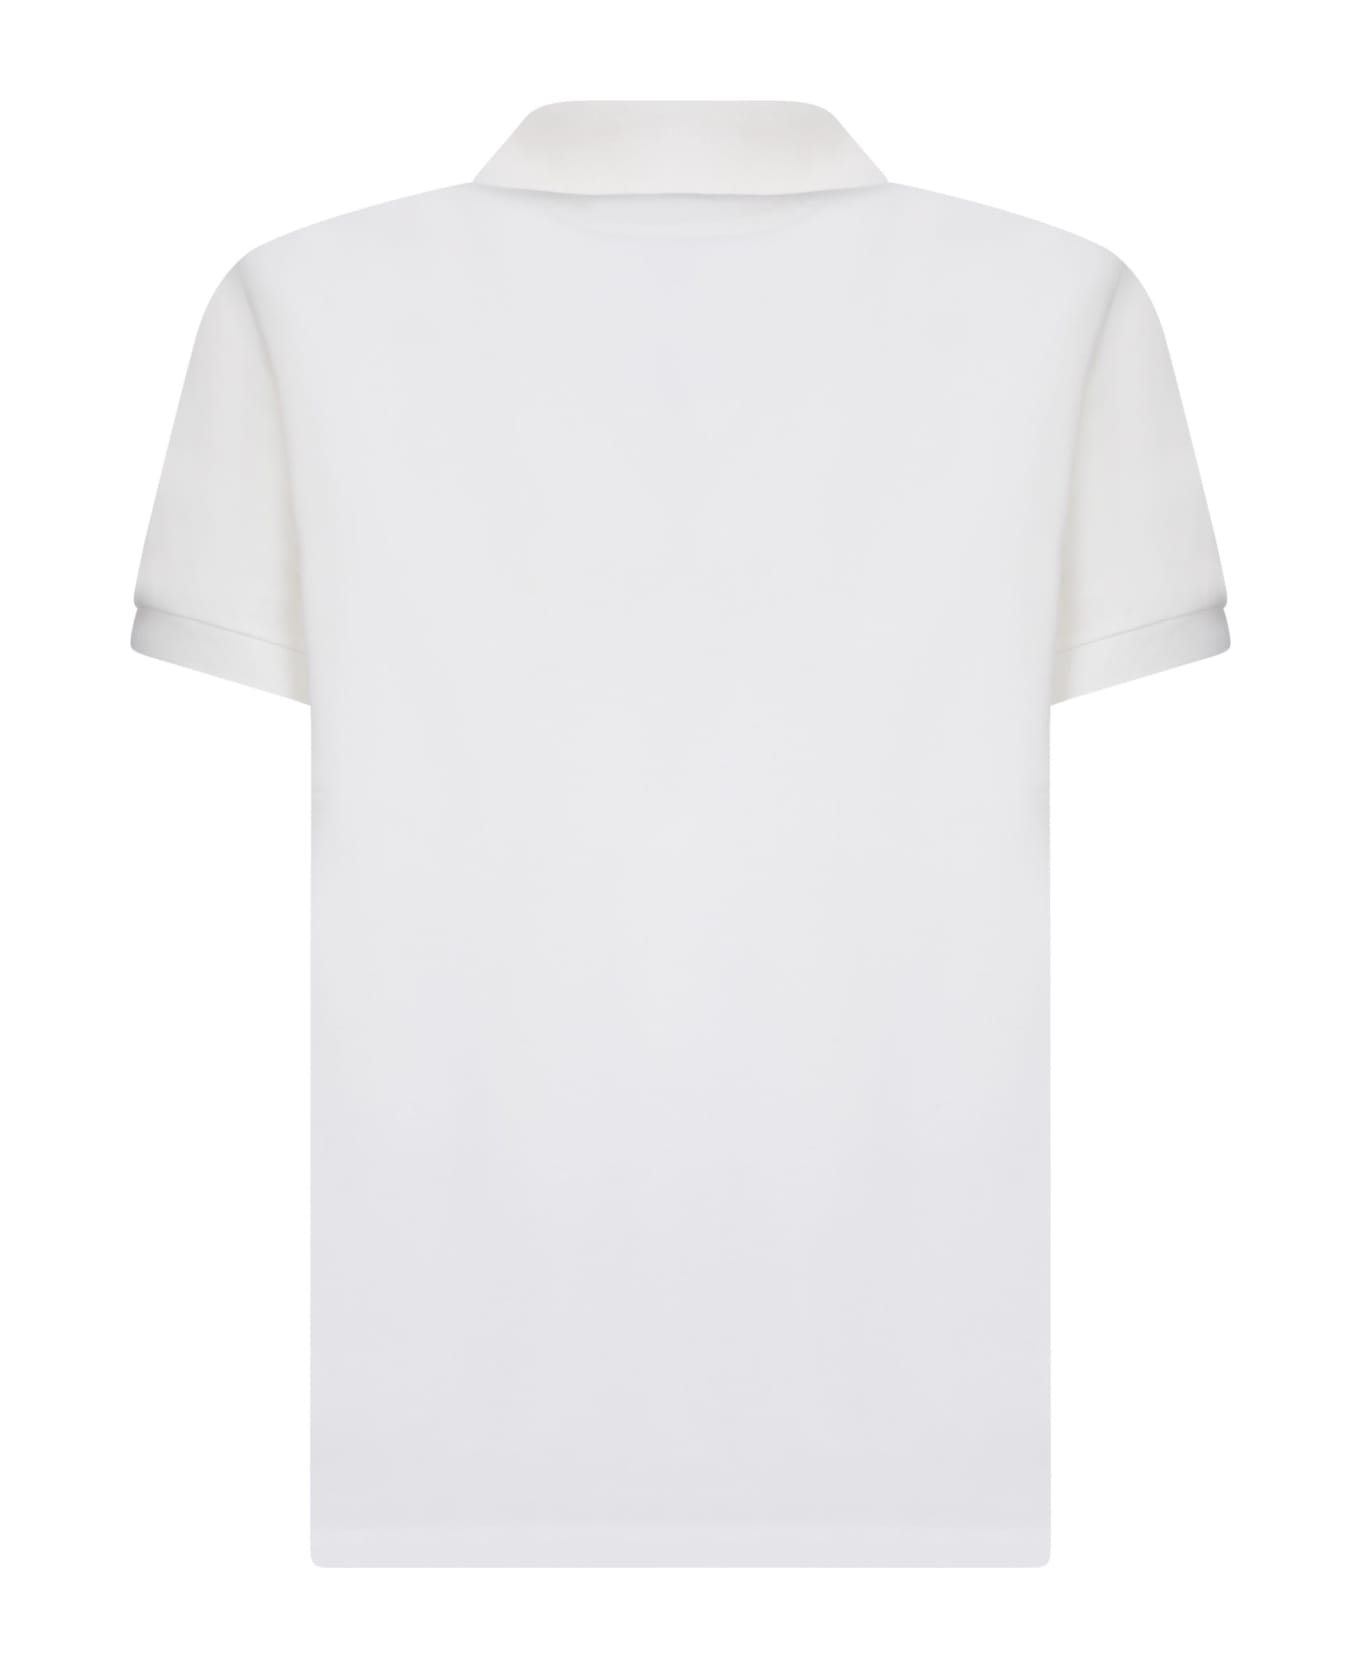 Paul Smith Striped Motif White Polo Shirt - White